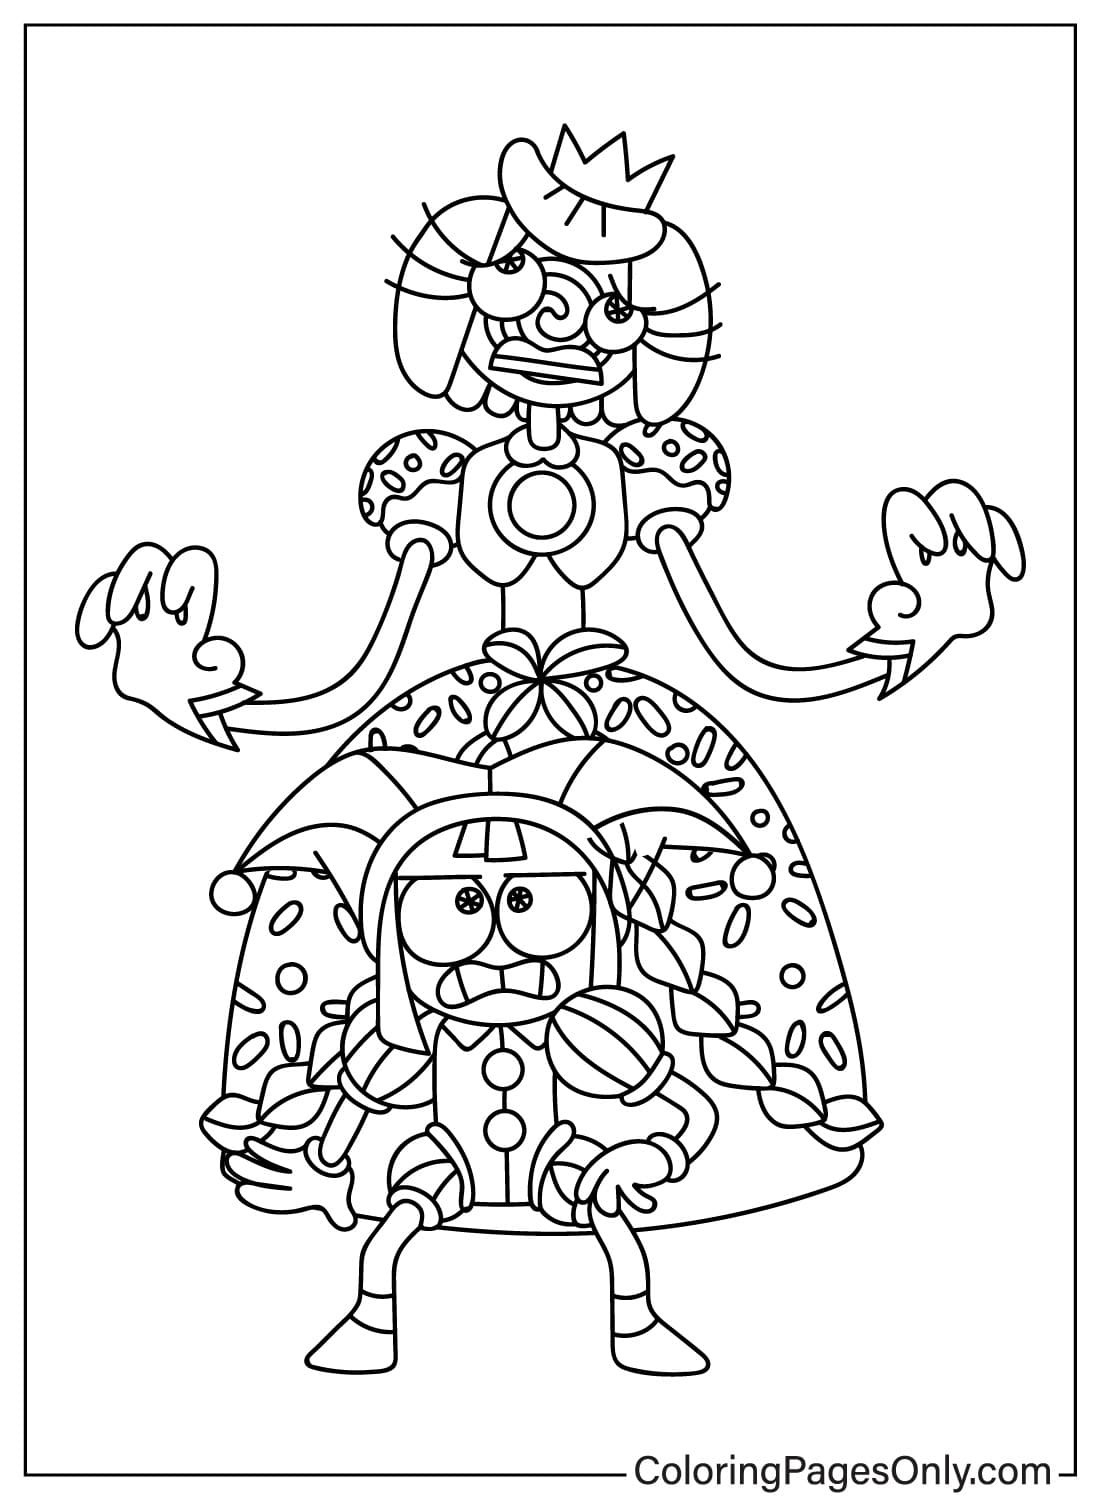 Página para colorear asustada de la princesa Loolilalu y Pomni de Pomni